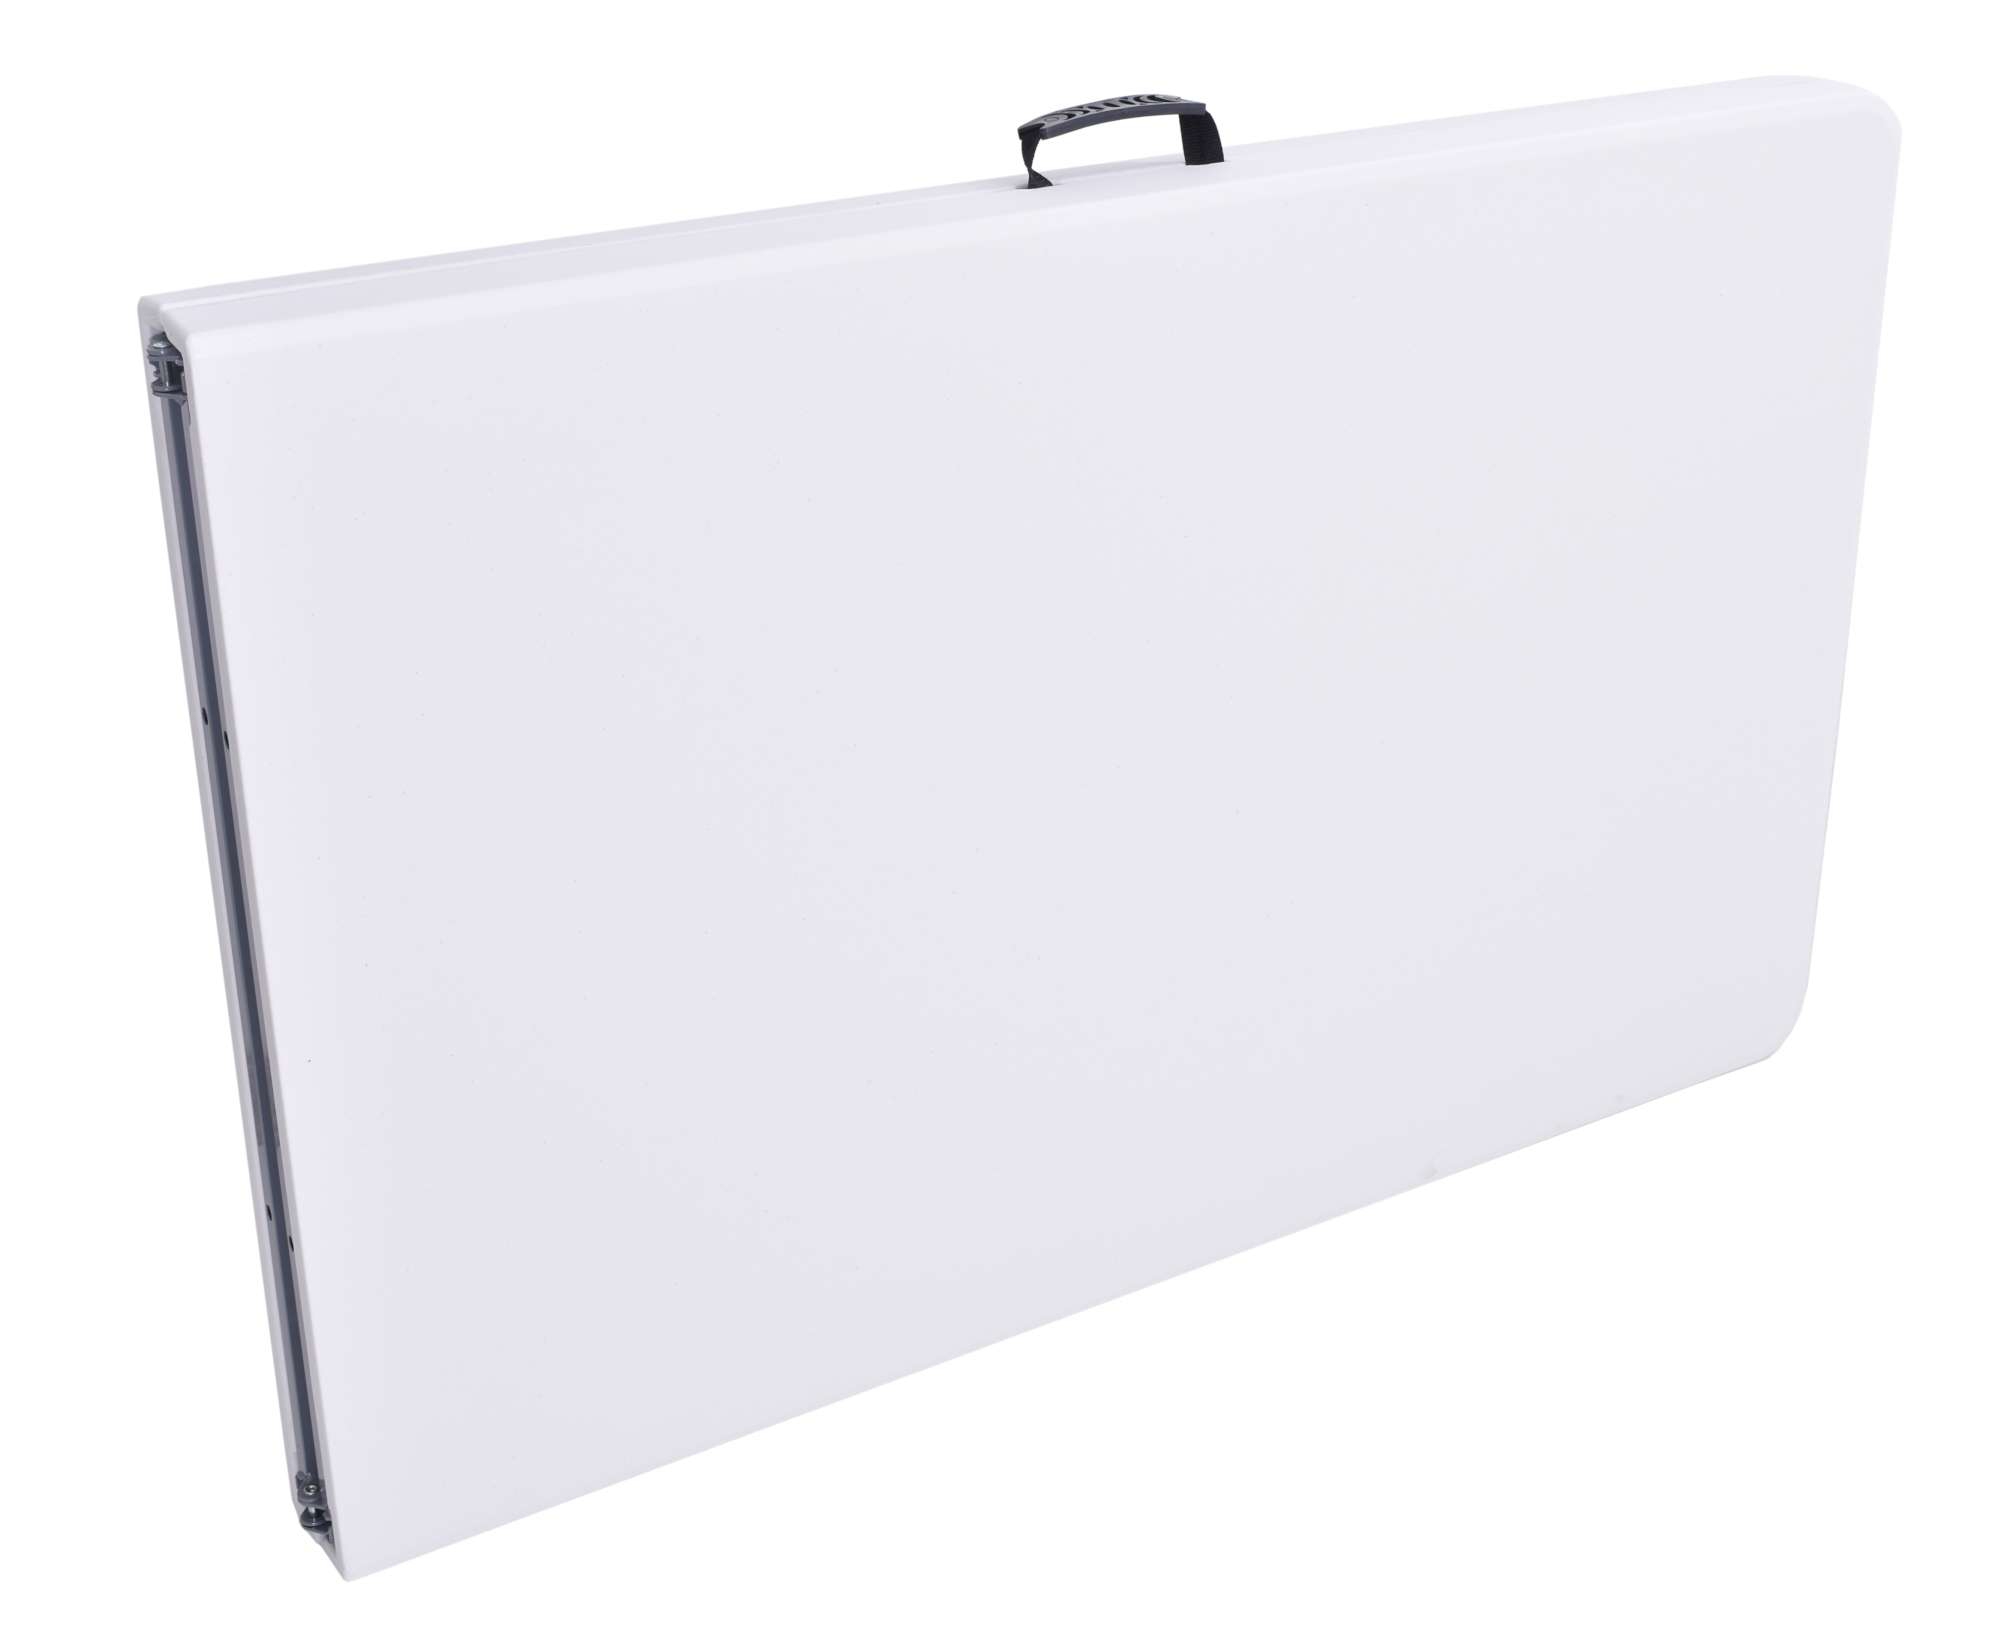 Stół cateringowy Impro składany w walizkę 240 cm biały